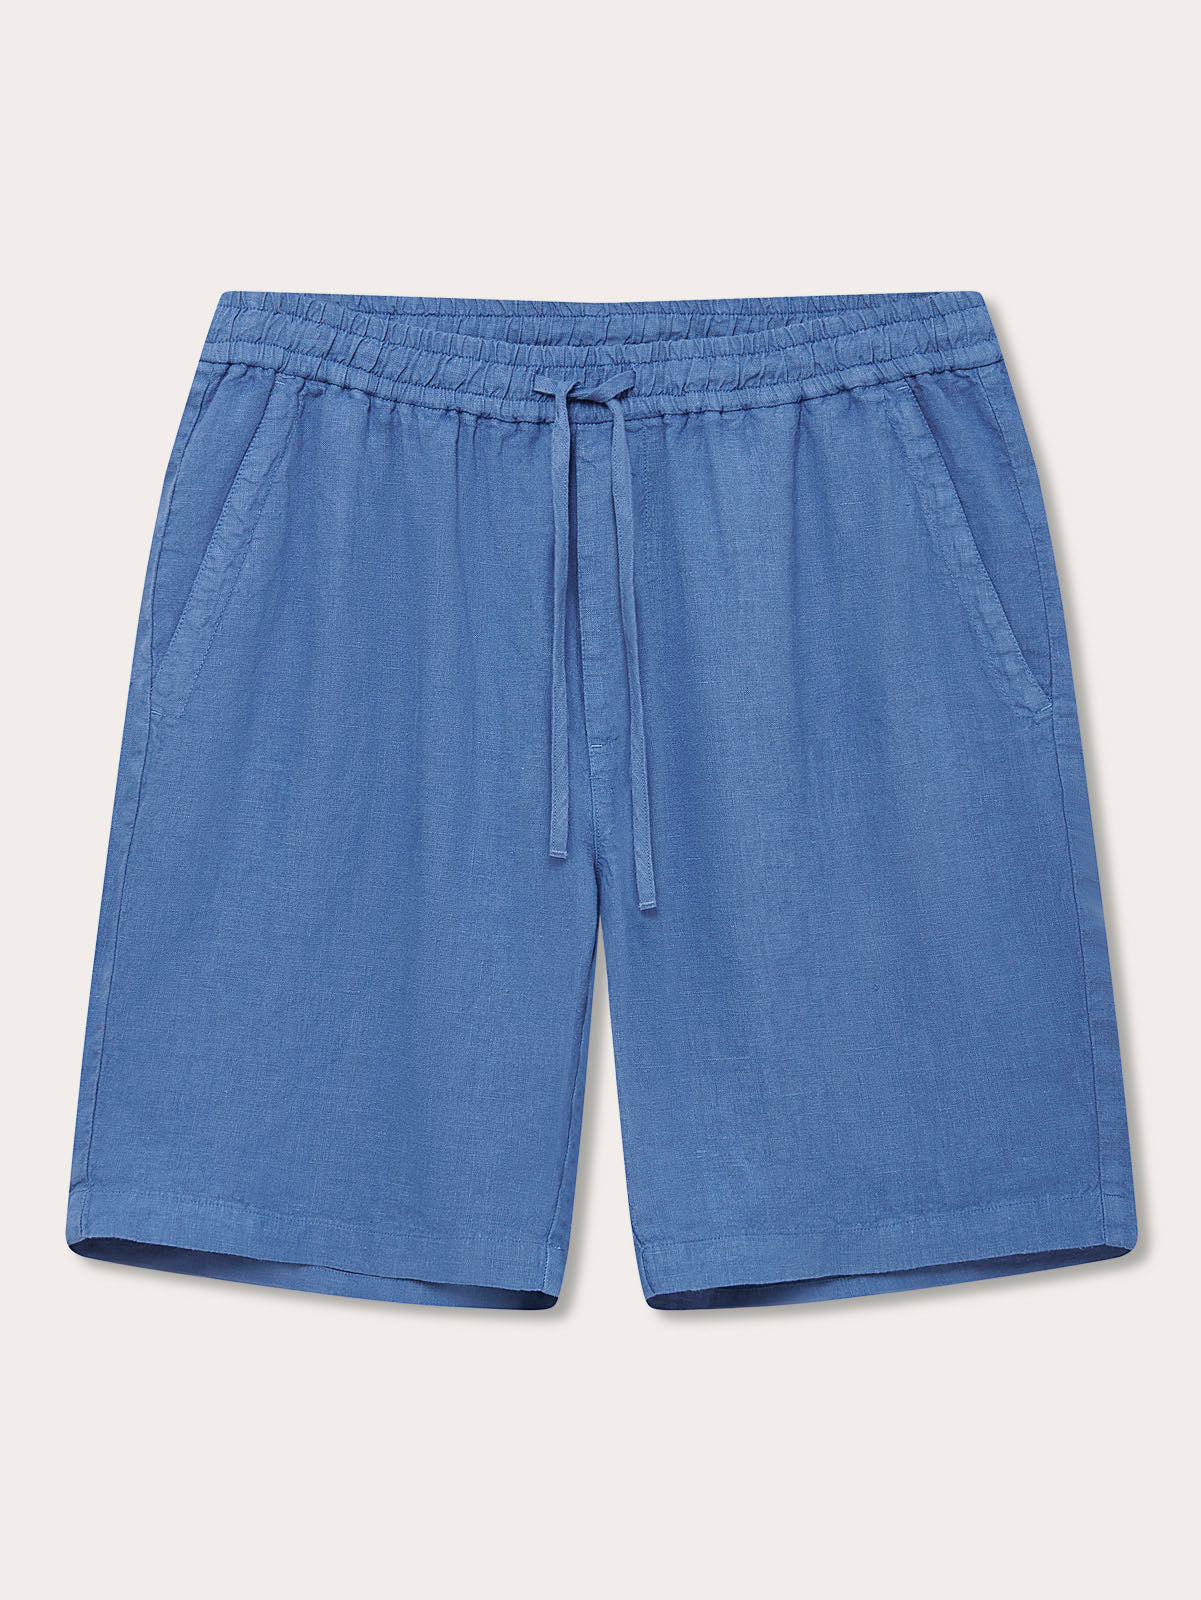 Men’s Deep Blue Joulter Linen Shorts